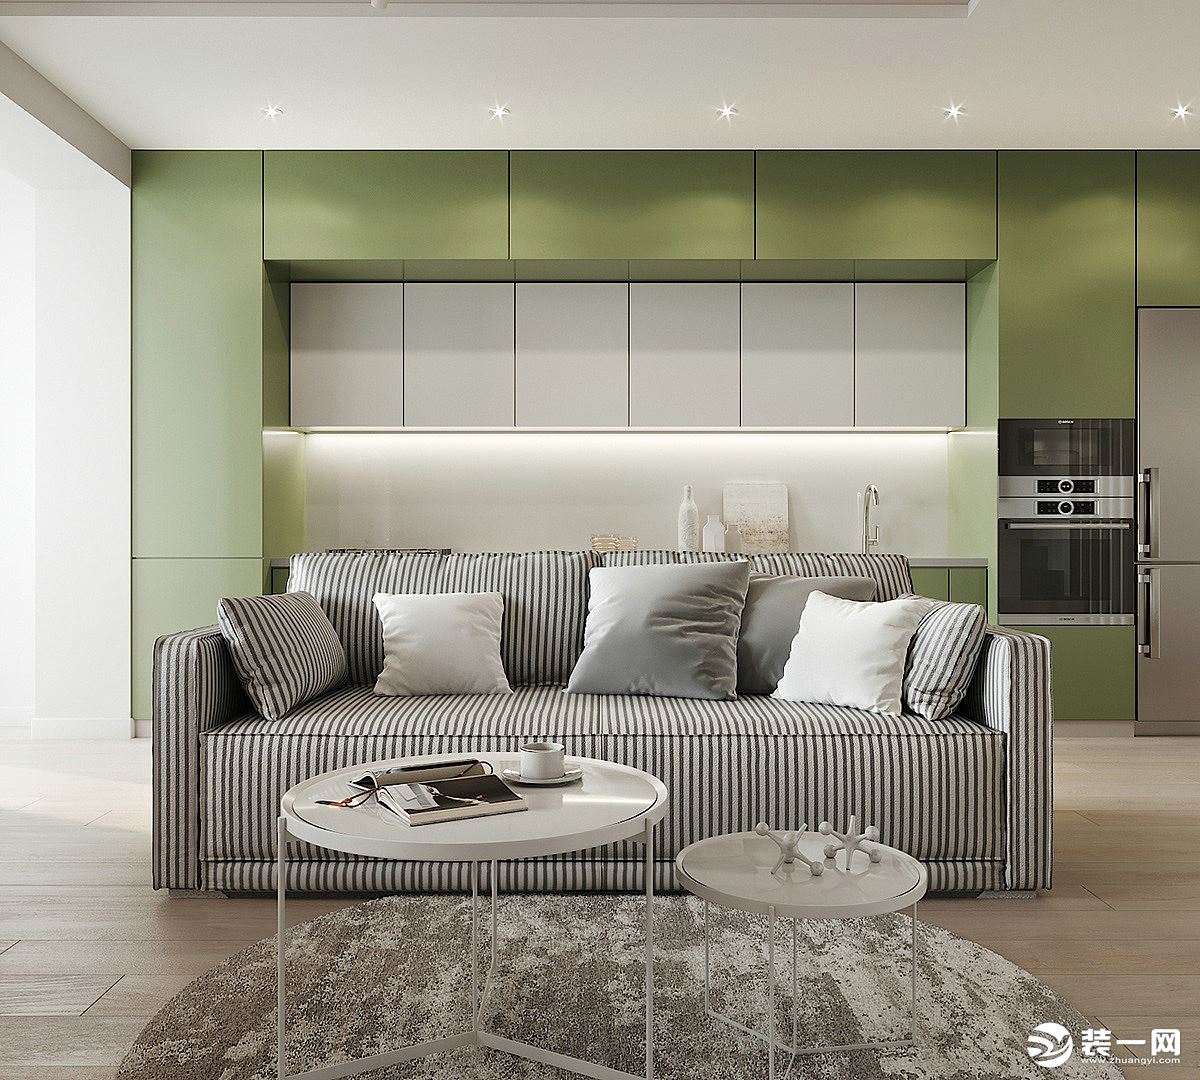 灰白色的沙发，搭配简易的小茶几，美观又实用。厨房嫩绿色的装潢，让整个空间流露出一丝清新的气息。